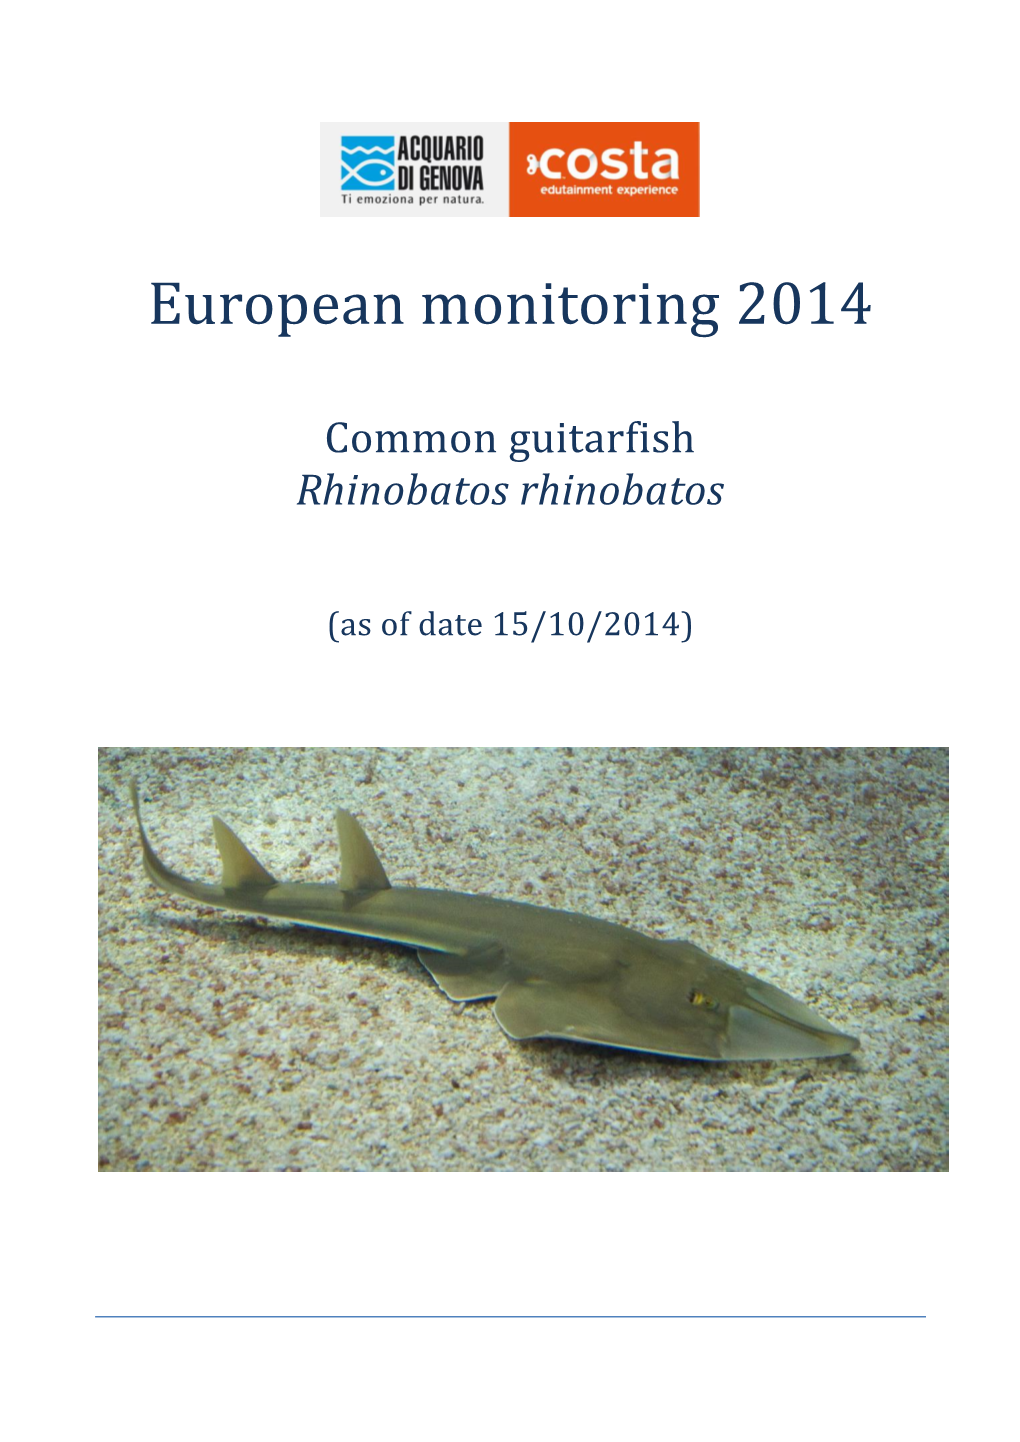 European Monitoring 2014